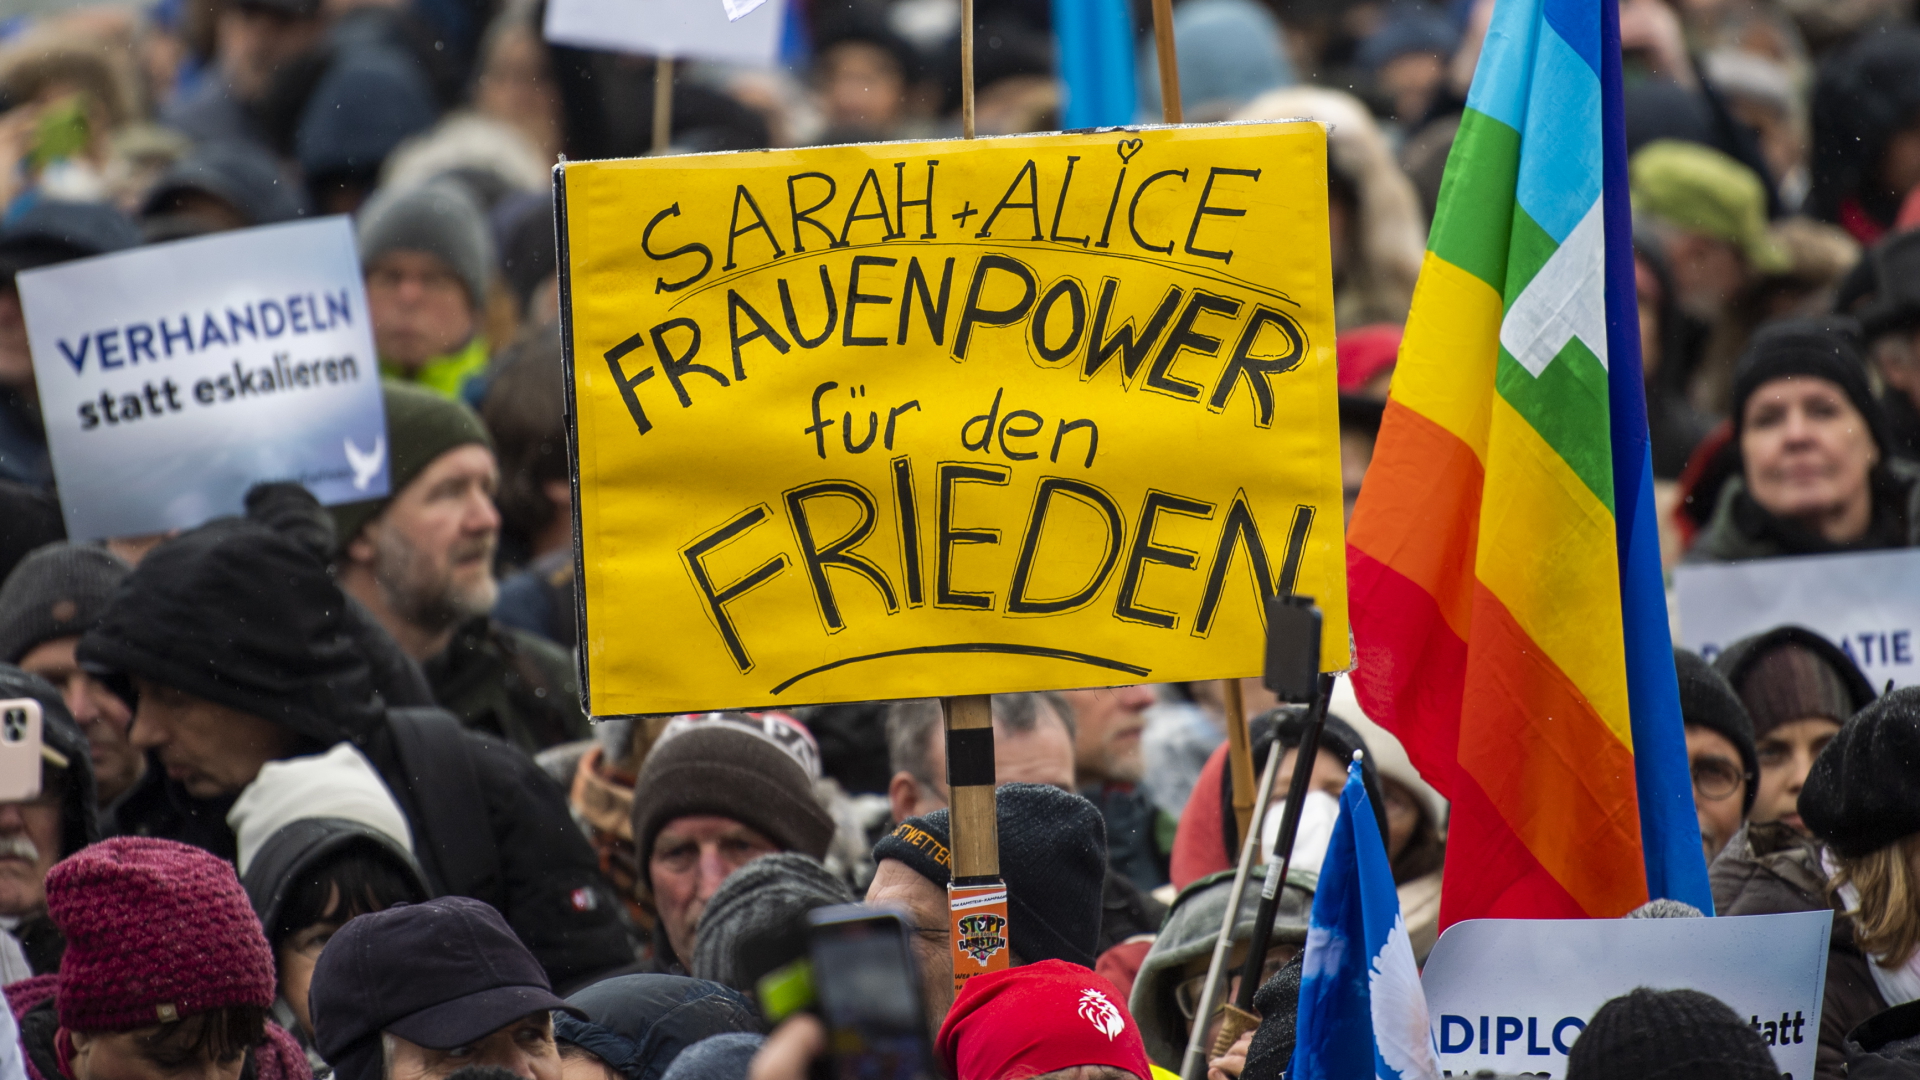 Ein Teilnehmer einer Demonstration für Verhandlungen mit Russland am Brandenburger Tor hält ein Plakat mit der Aufschrift "Sarah + Alice - Frauenpower für den Frieden" | dpa